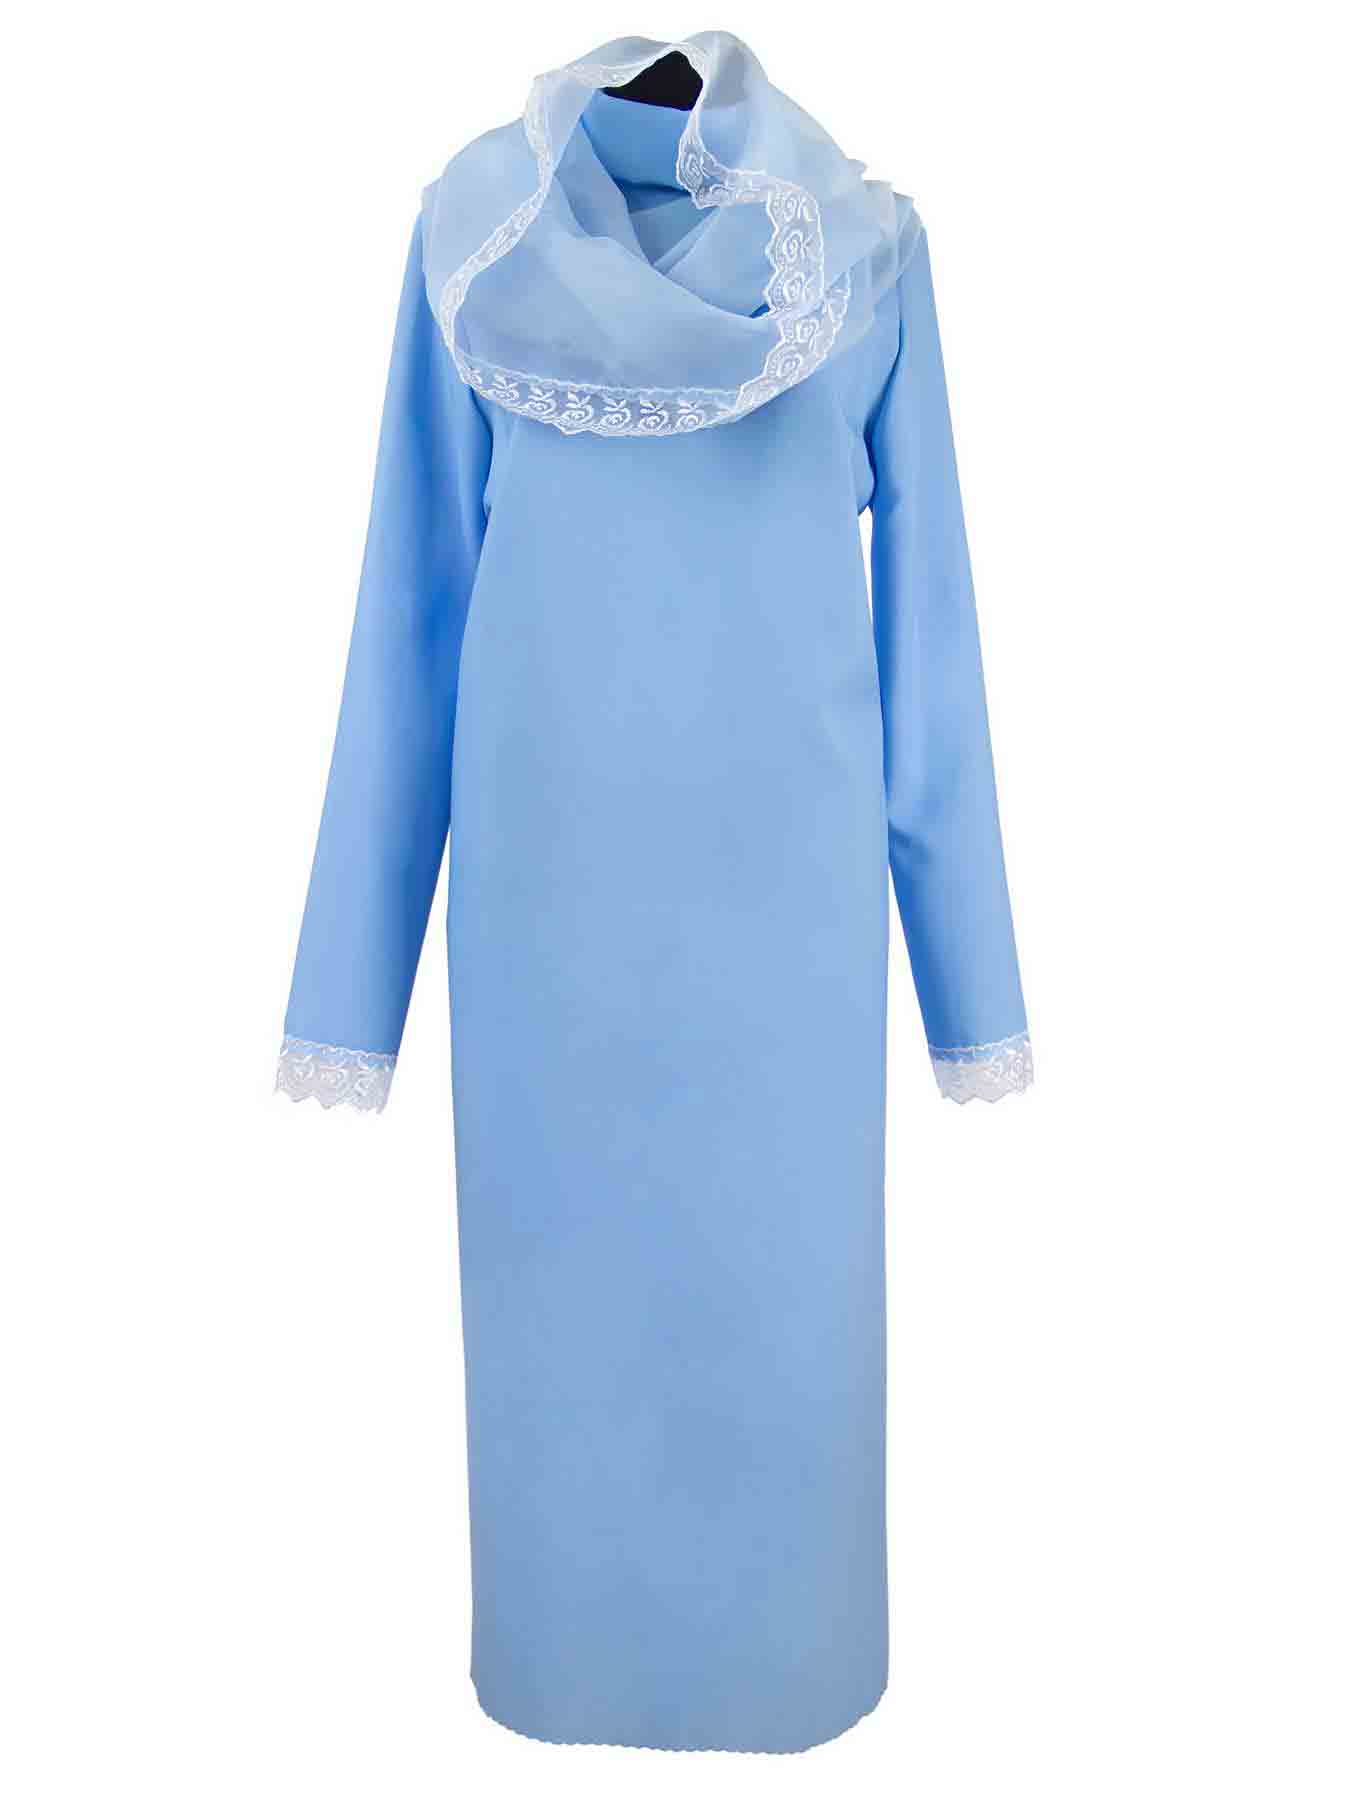 Ритуальное платье с капором из шифона ГОЛУБОЕ - Цена 2300,00 р.